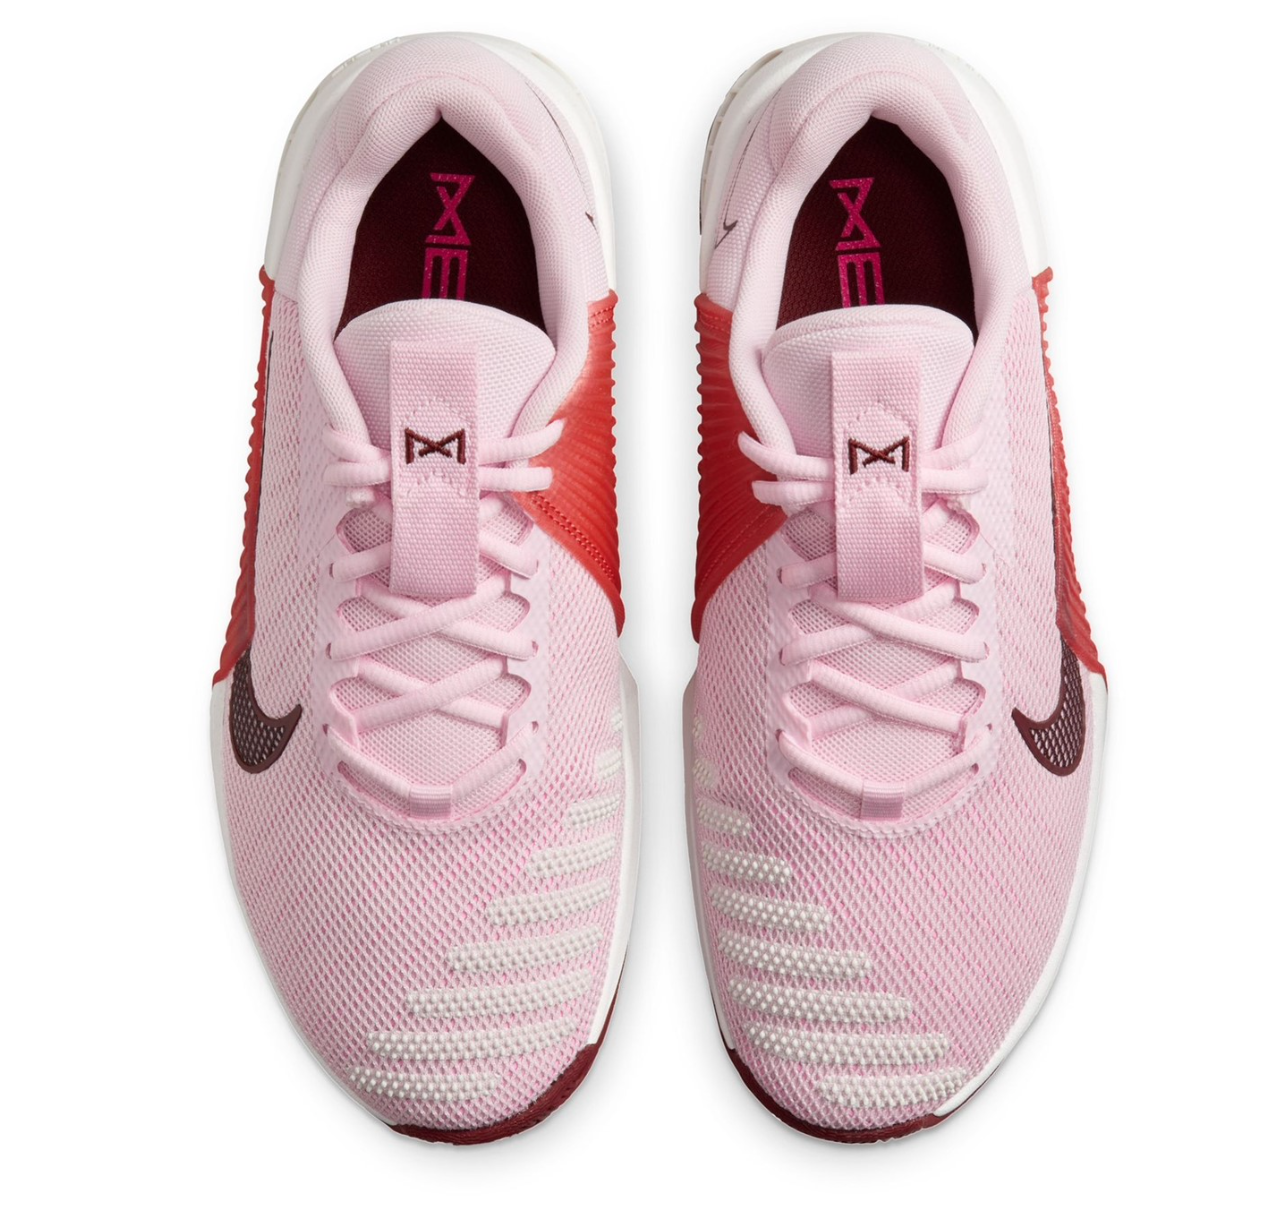 Tênis de Cross Nike Metcon 9 - Rosa / Branco - Feminino